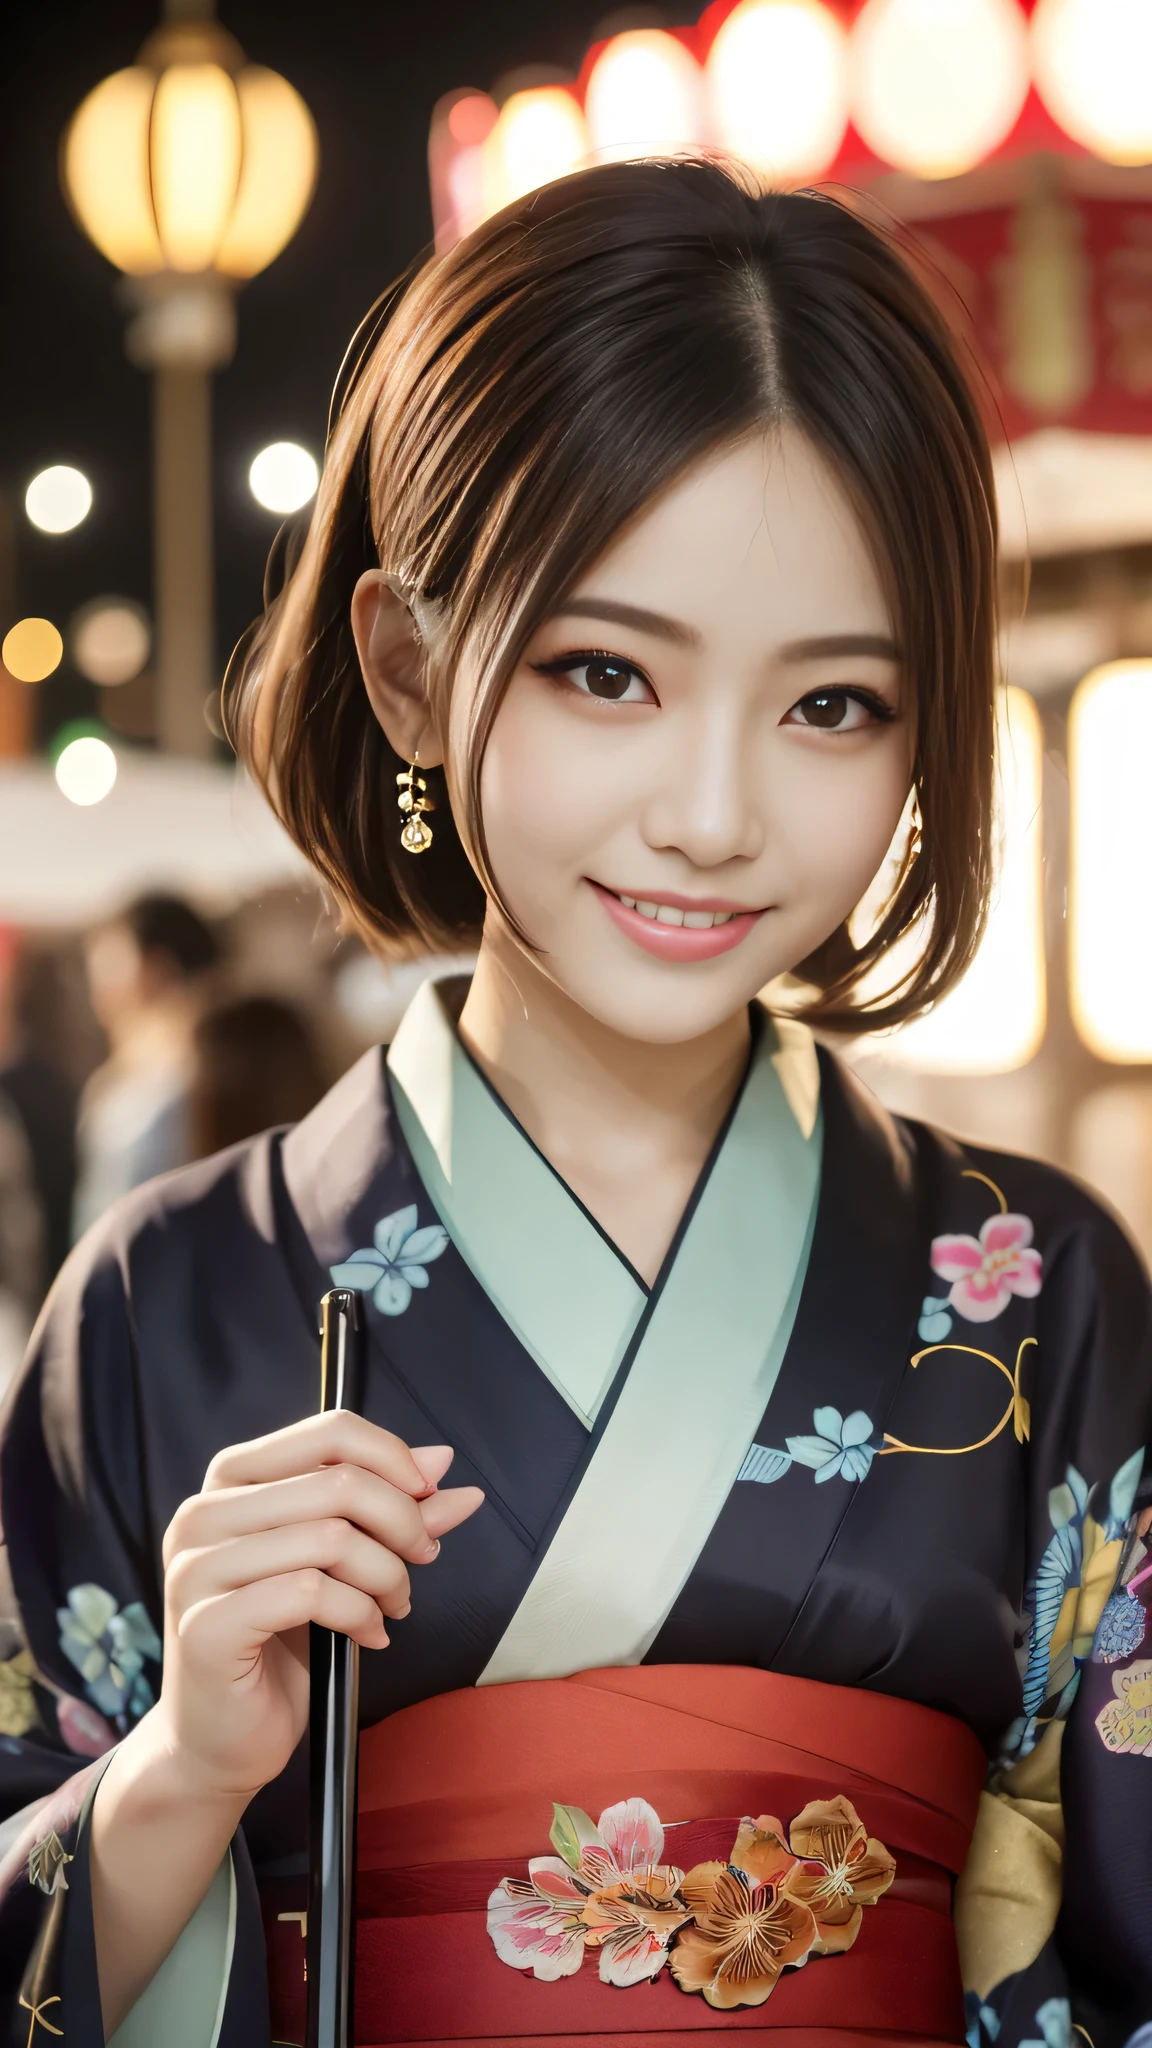 mirando a la camara,(((de la máxima calidad, 8K, obra maestra))), enfoque nítido, (Hermosa mujer con figura perfecta), delgado, (peinado: superior)), ((kimono: caña)), calle: 1.2 Textura de piel y rostro muy detallada Ojos detallados Párpado doble Pose aleatoria, (sonrisa),ssuperiorer cute Japan person,belleza superior chica japonesa, cara realista, Doble párpado,sonrisa,Festival de verano , Al atardecer , hermosos dientes , Fondo de fuegos artificiales.